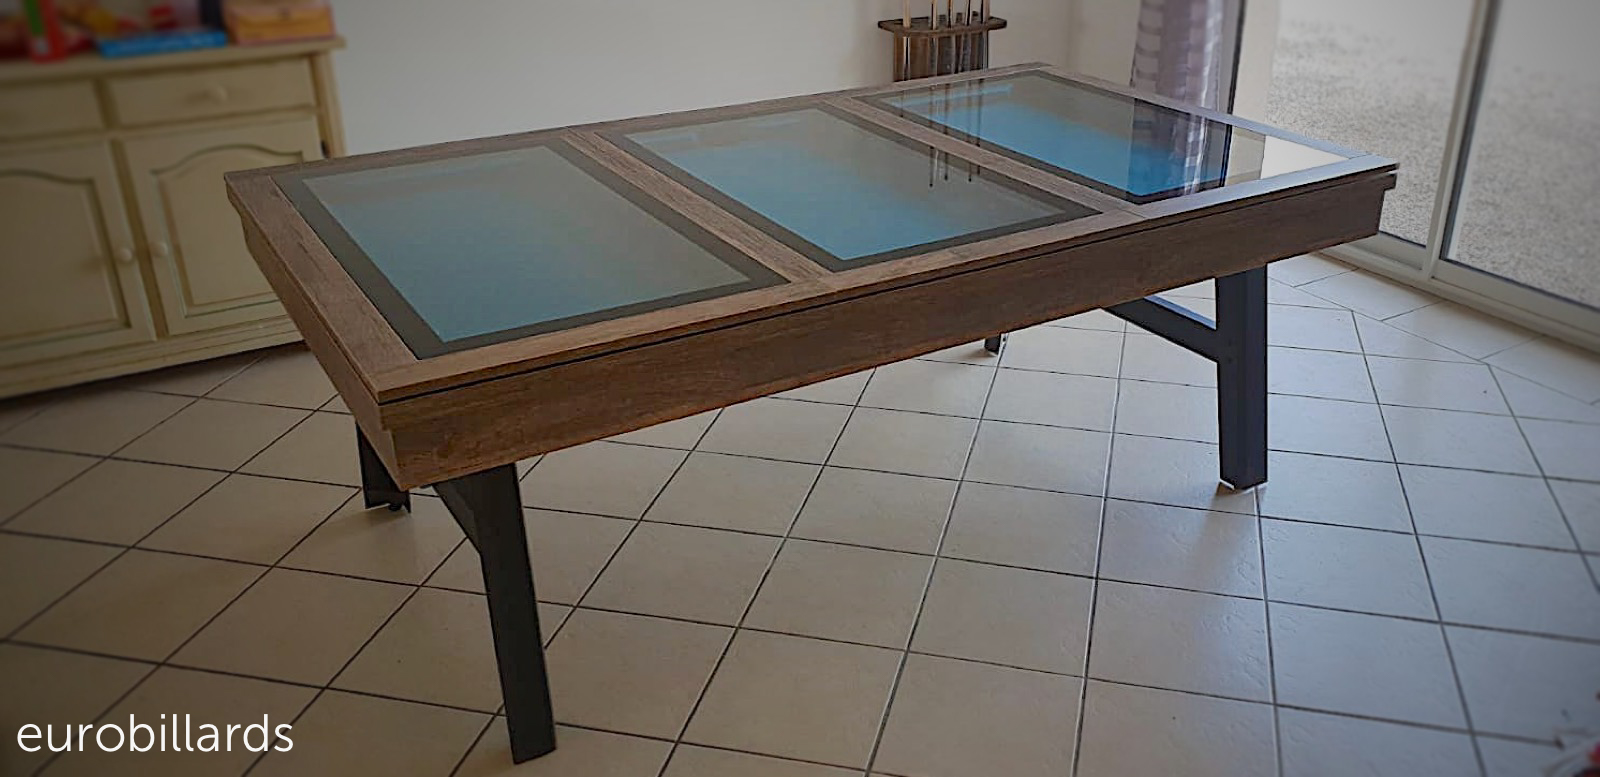 Table en chêne finition old timer avec plateau en verre sur piétement métallique noir et rouille, qui se transforme en billard au look industriel